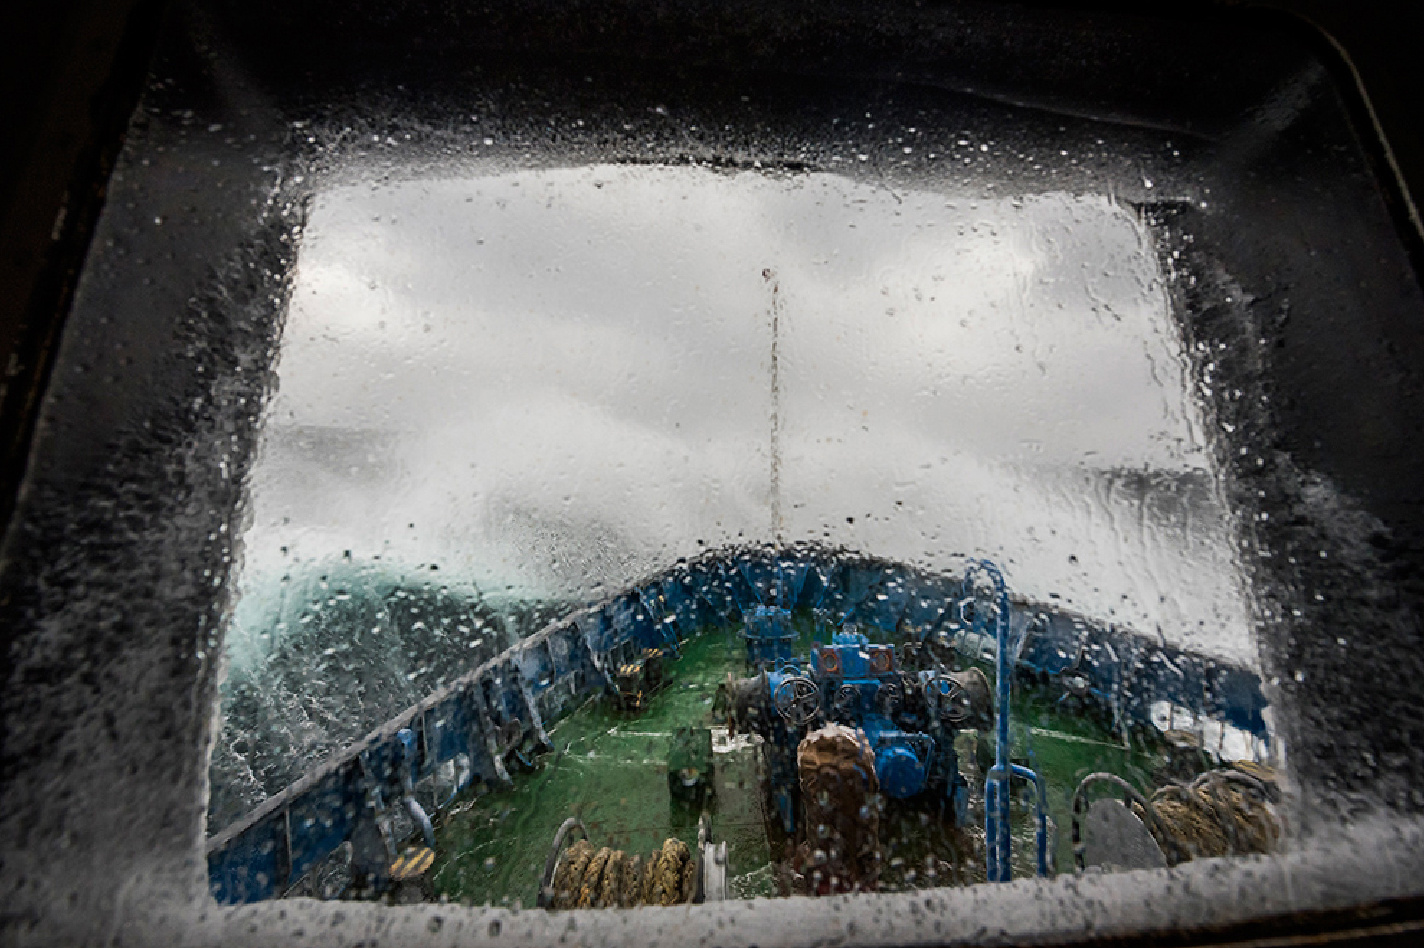 Штормовое Баренцево море.Фото: Виталий Новиков, участник конкурса РГО 